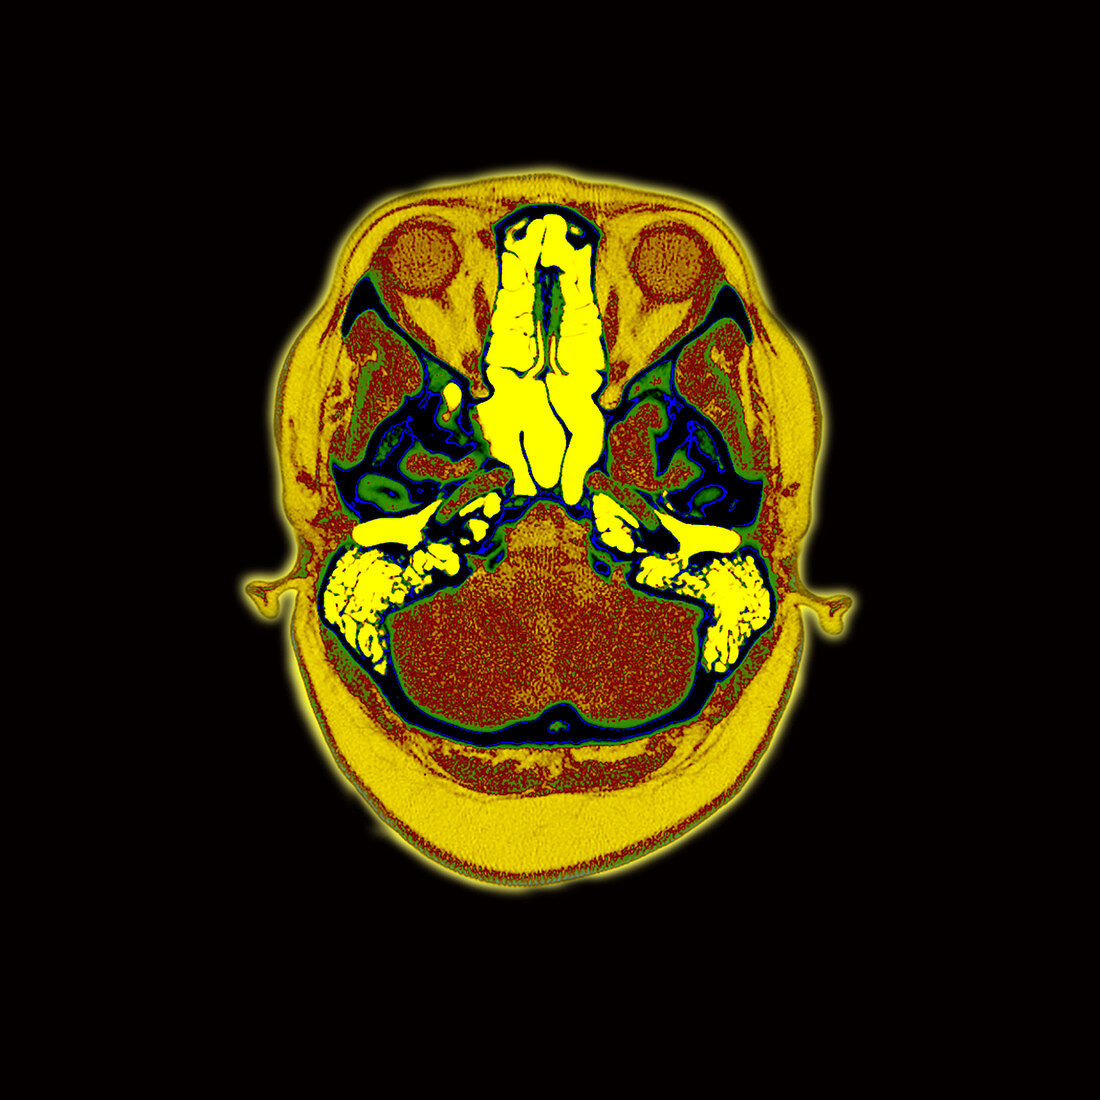 CT Image through Normal Skull Base